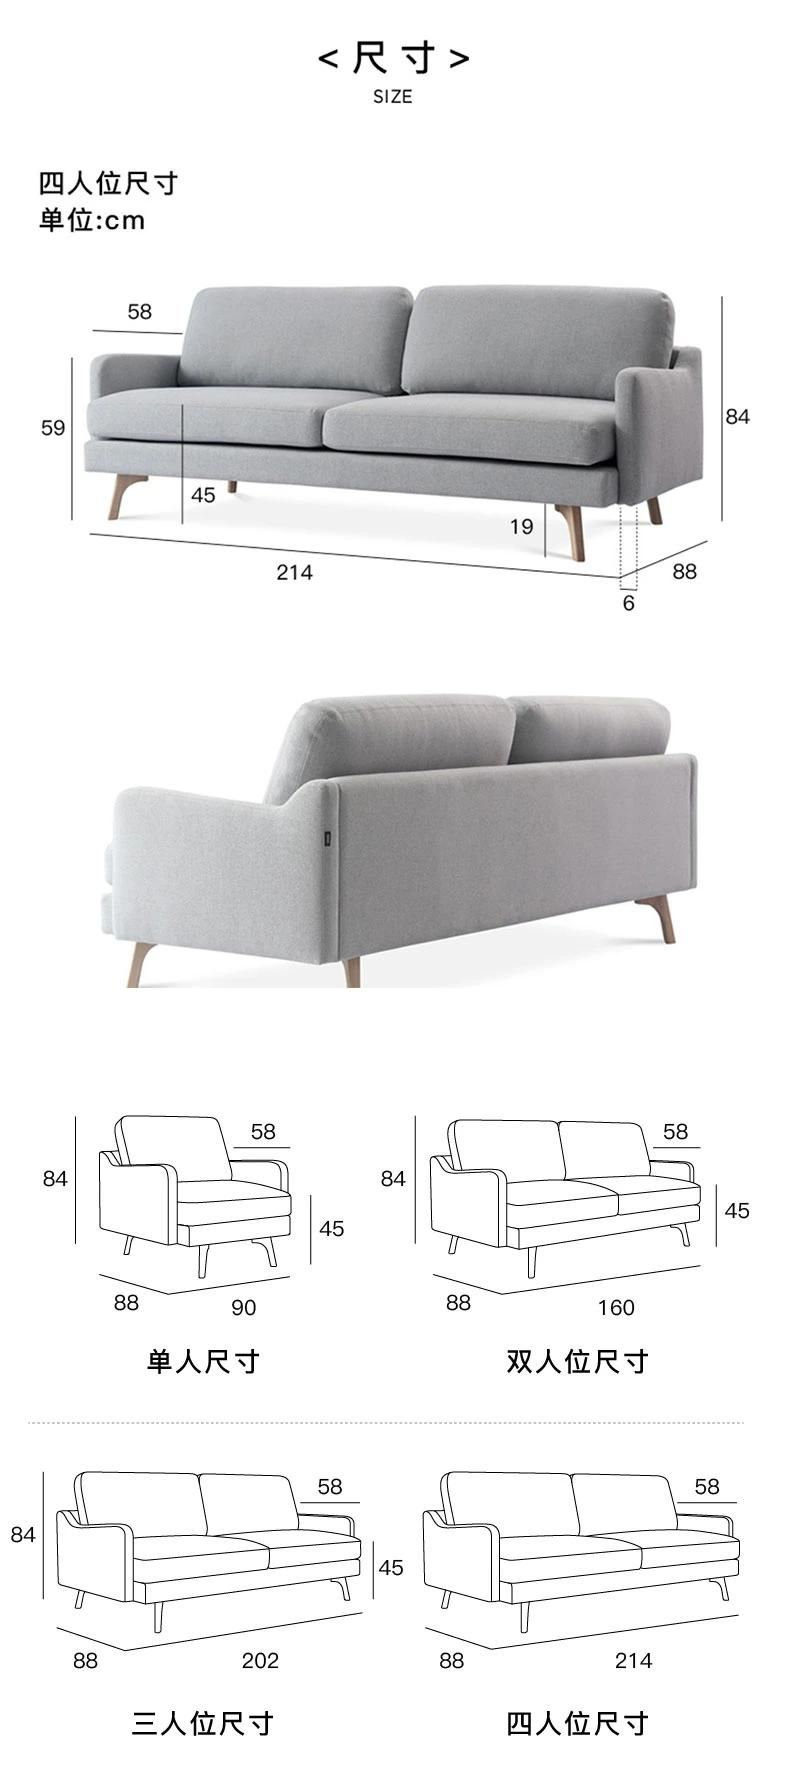 Minimalist Style Sofa Living Room Fabric Furniture